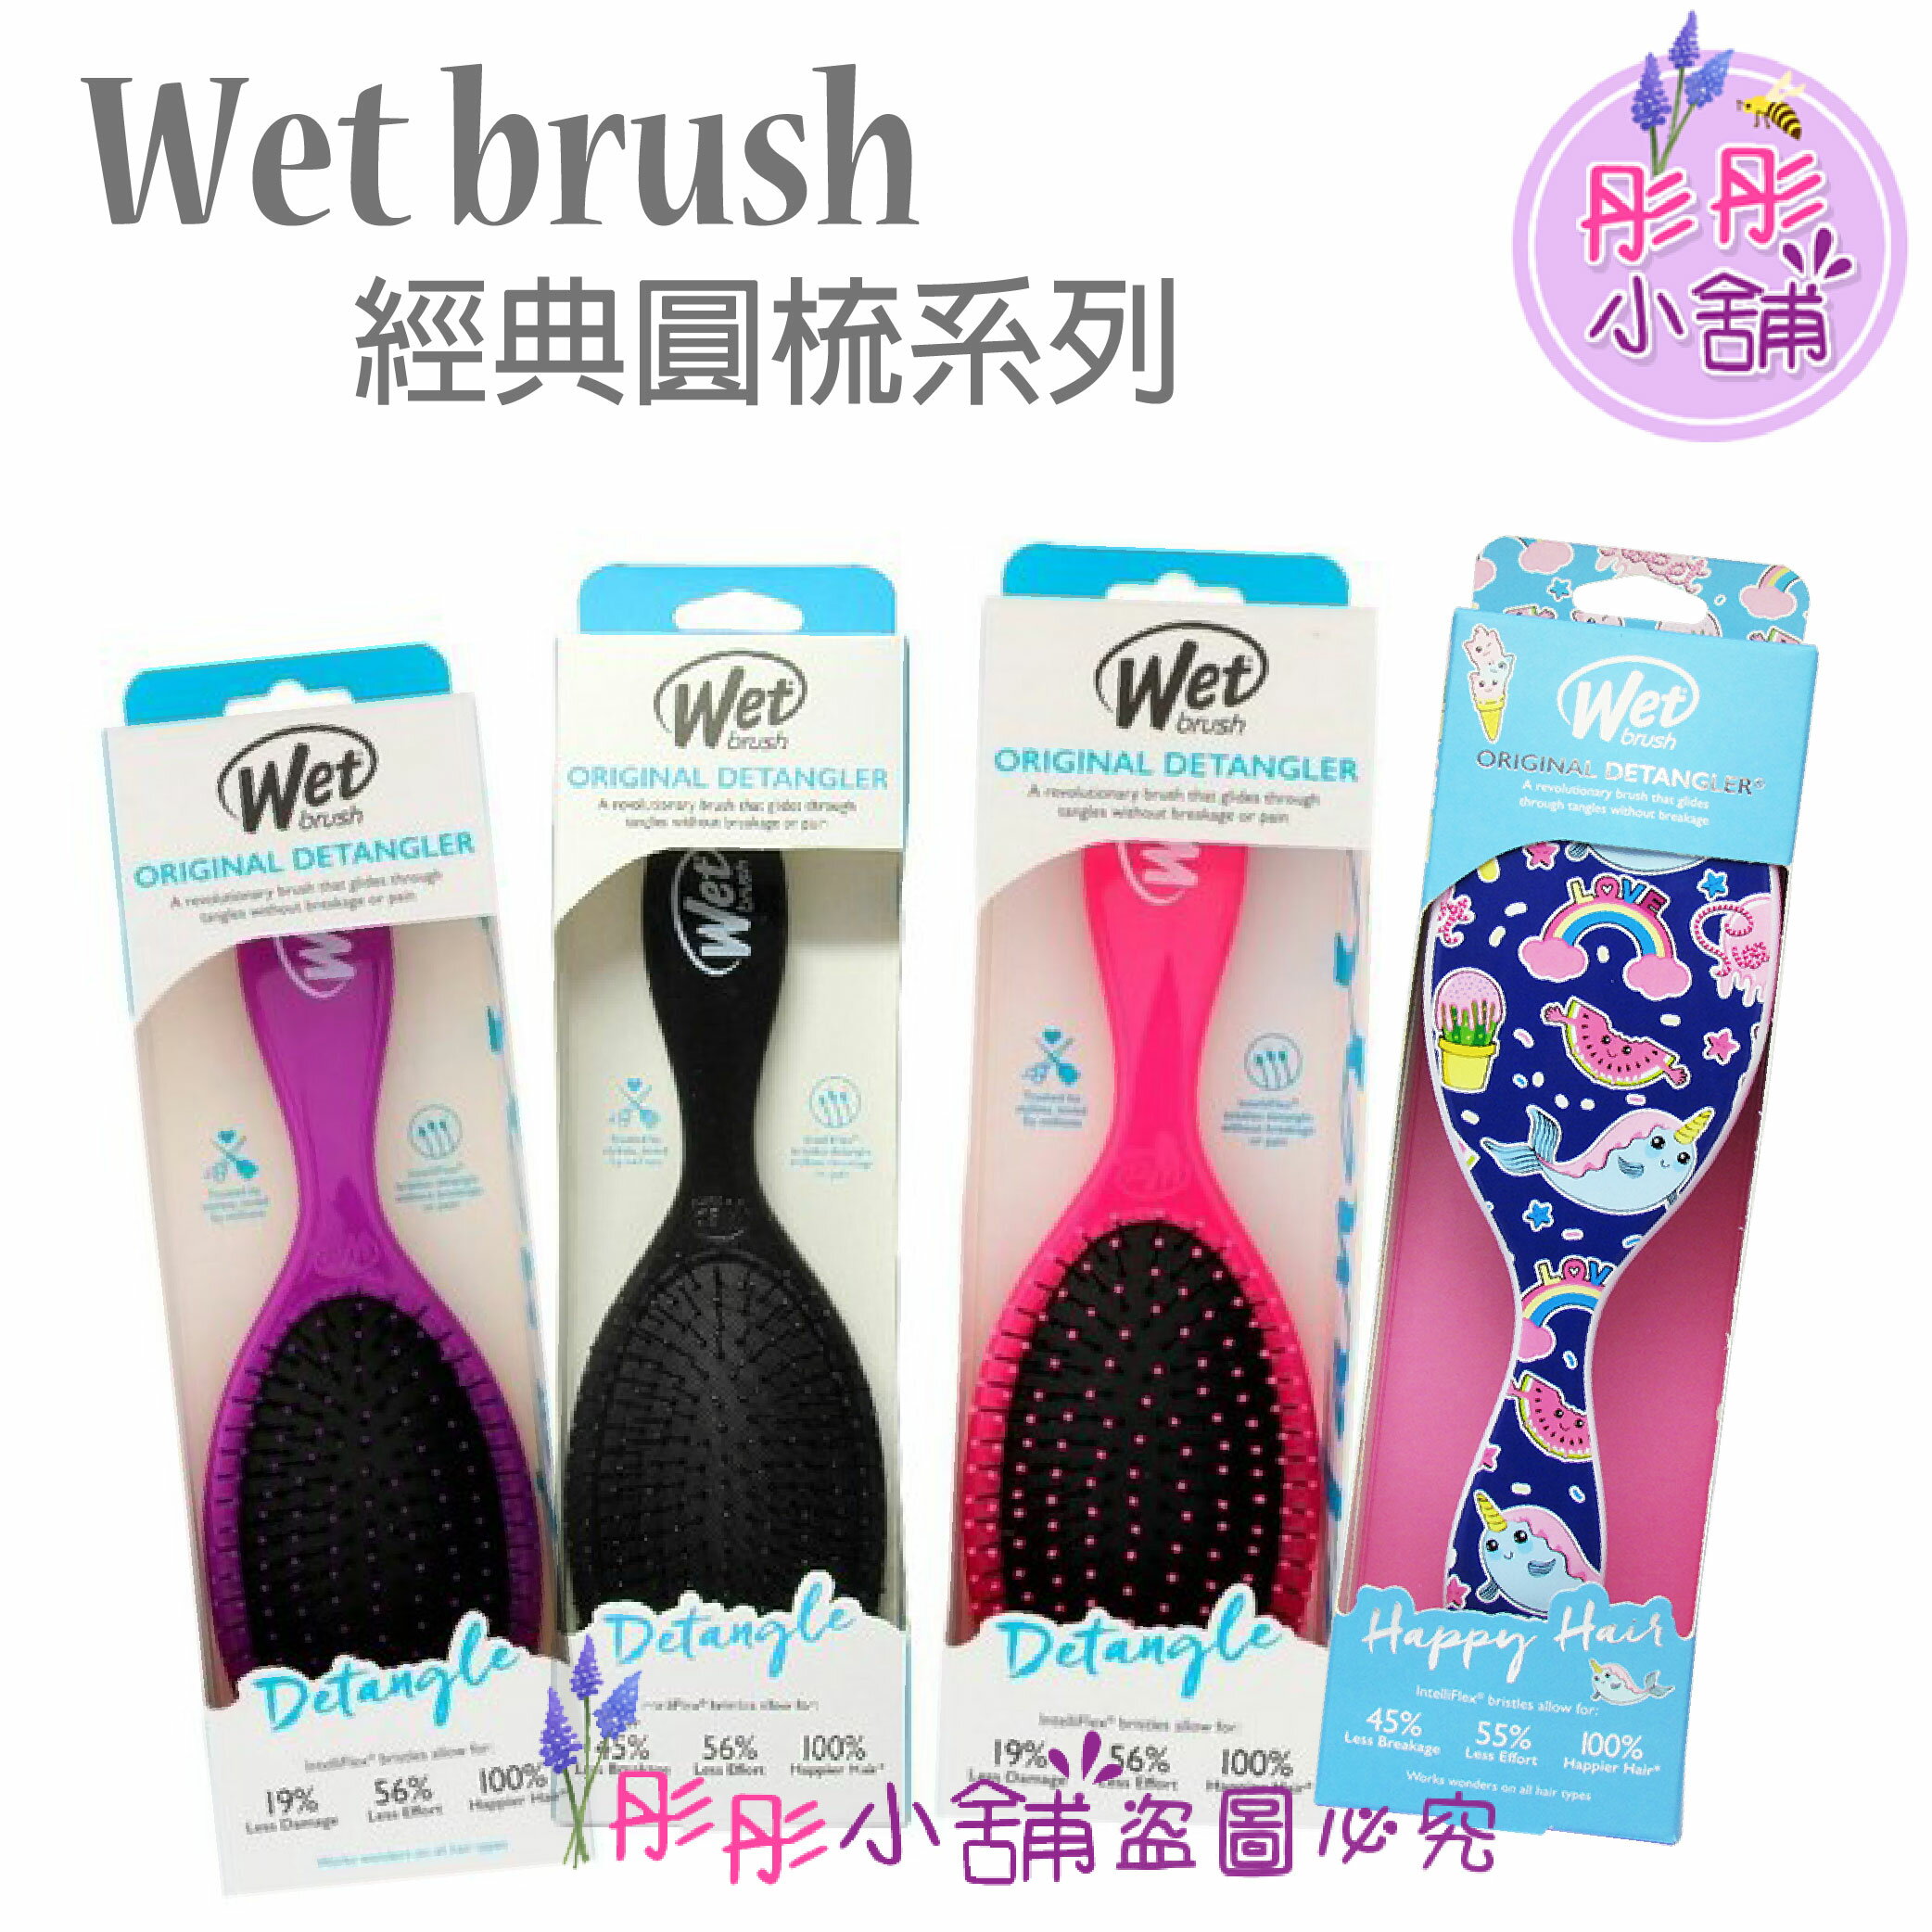 【彤彤小舖】Wet Brush 去結梳 乾濕兩用梳 經典圓梳 輕鬆梳理糾結 原裝包裝 0